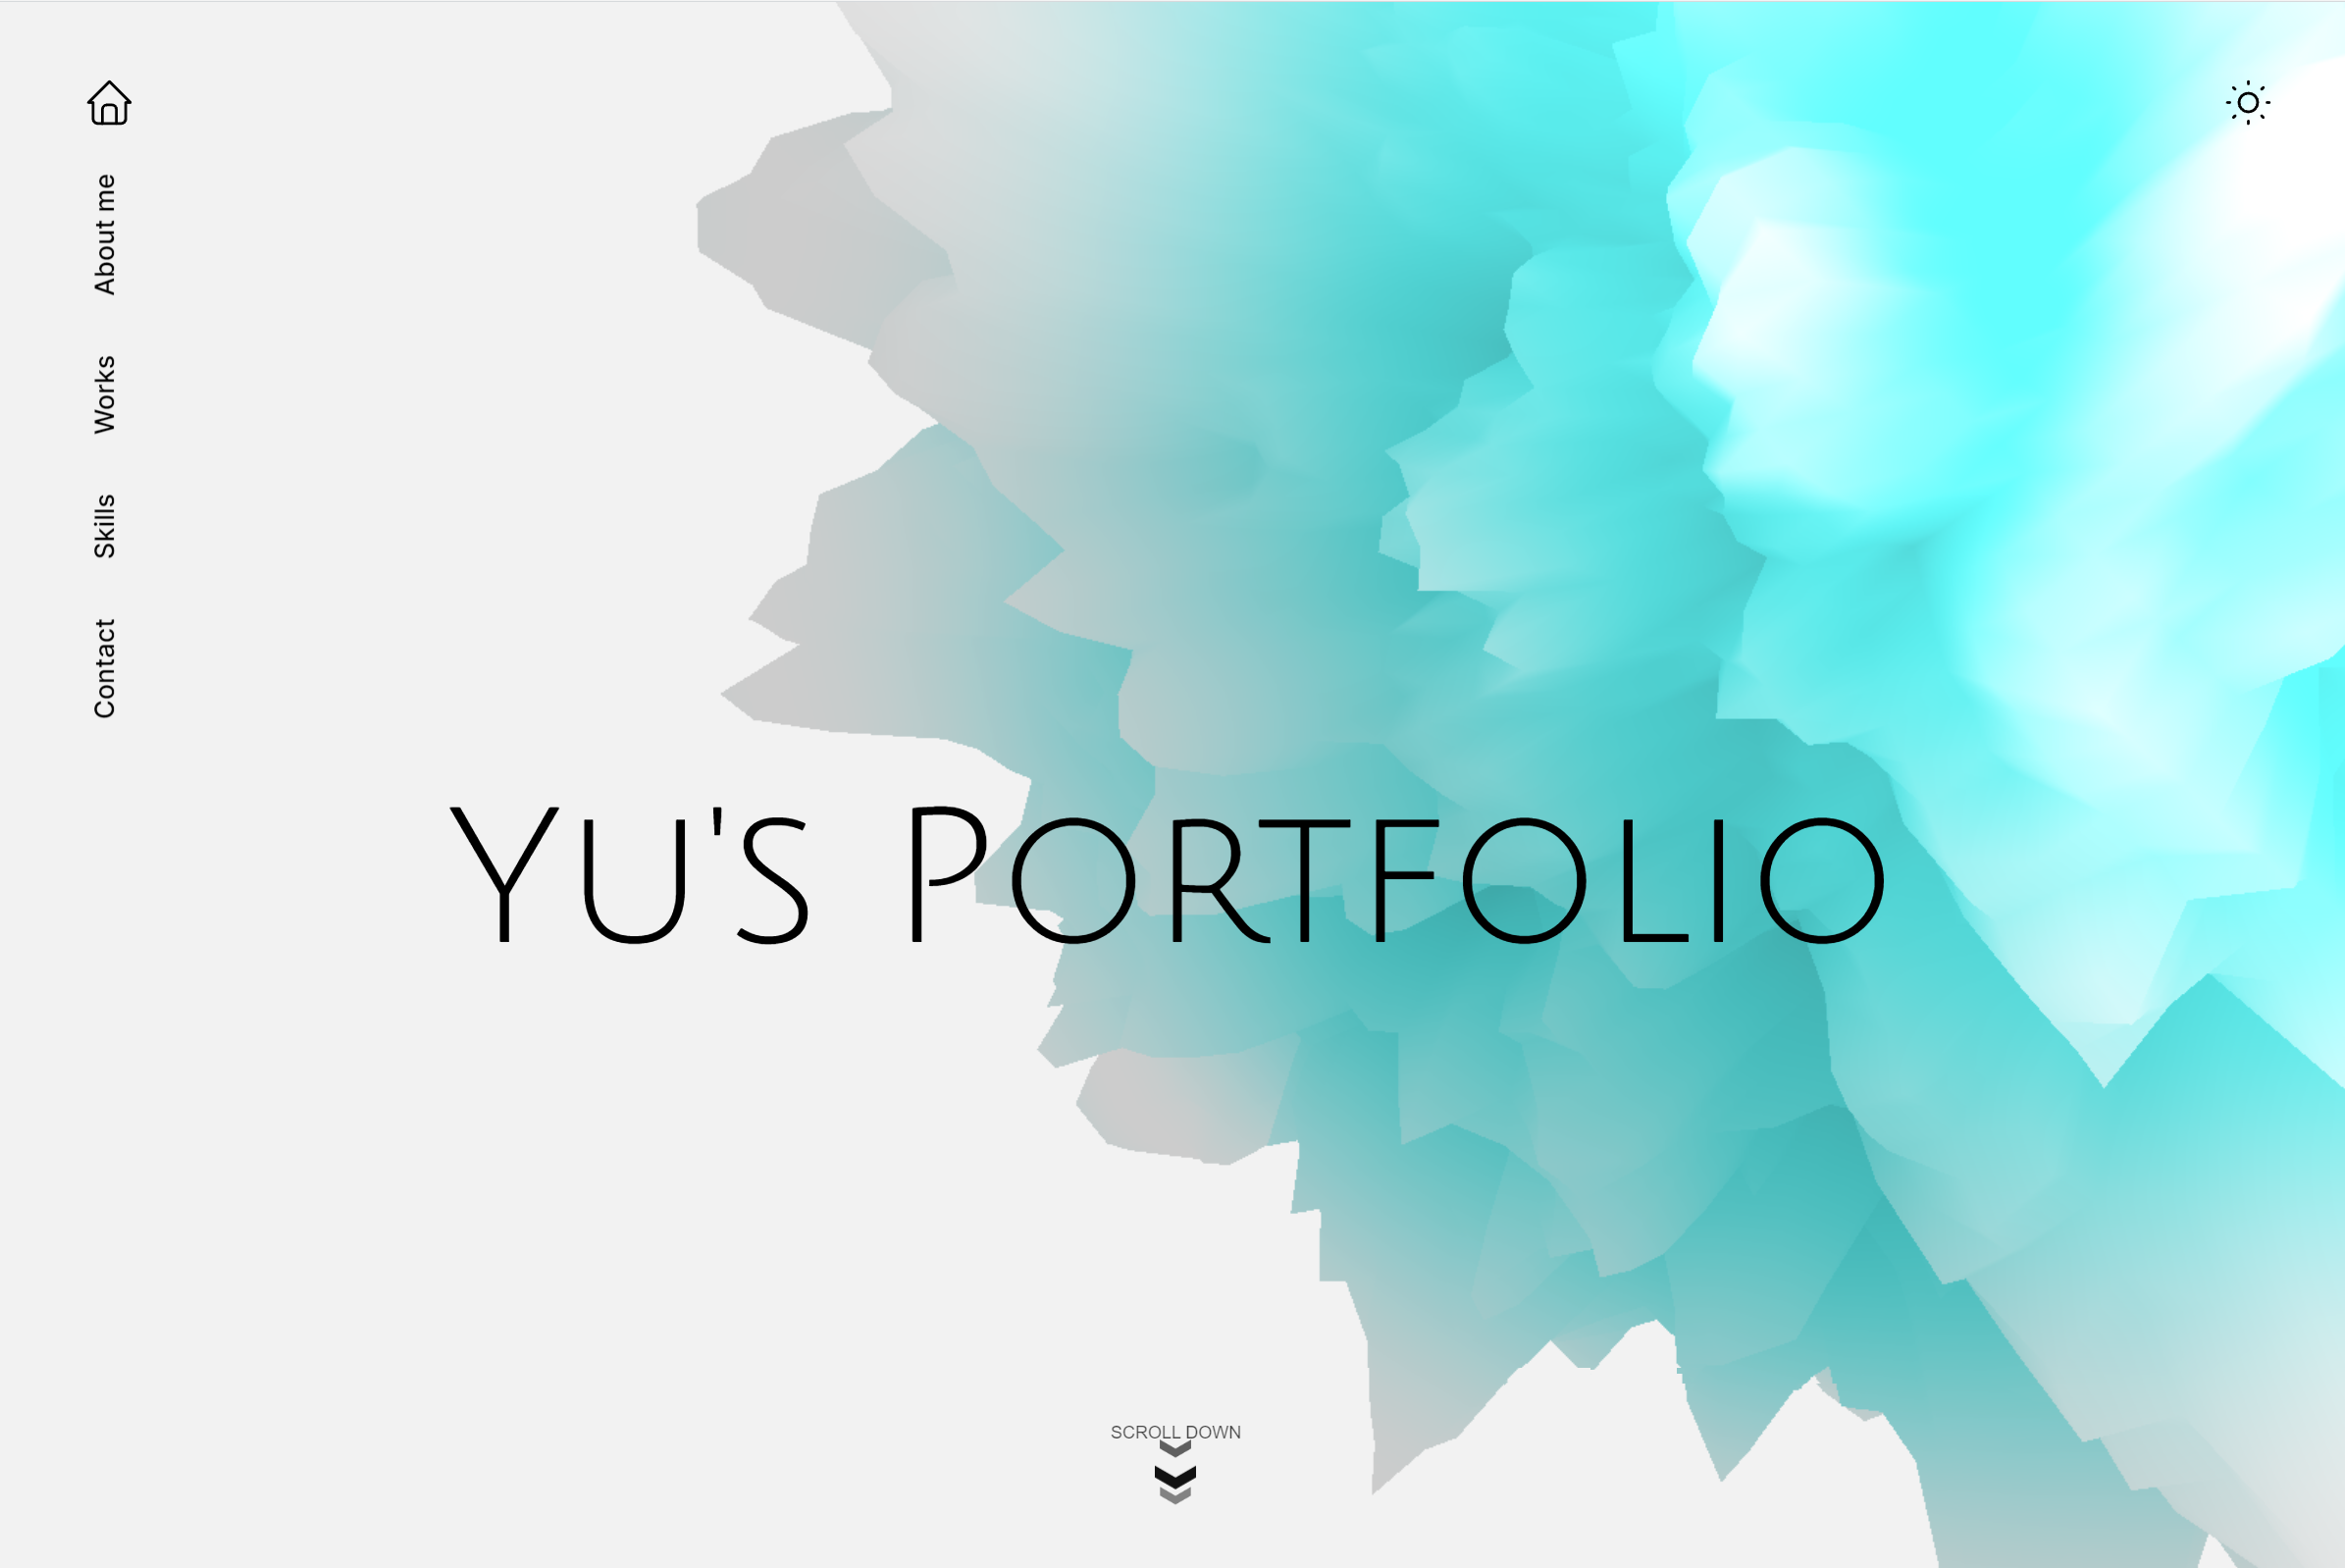 Yu's Portfolio